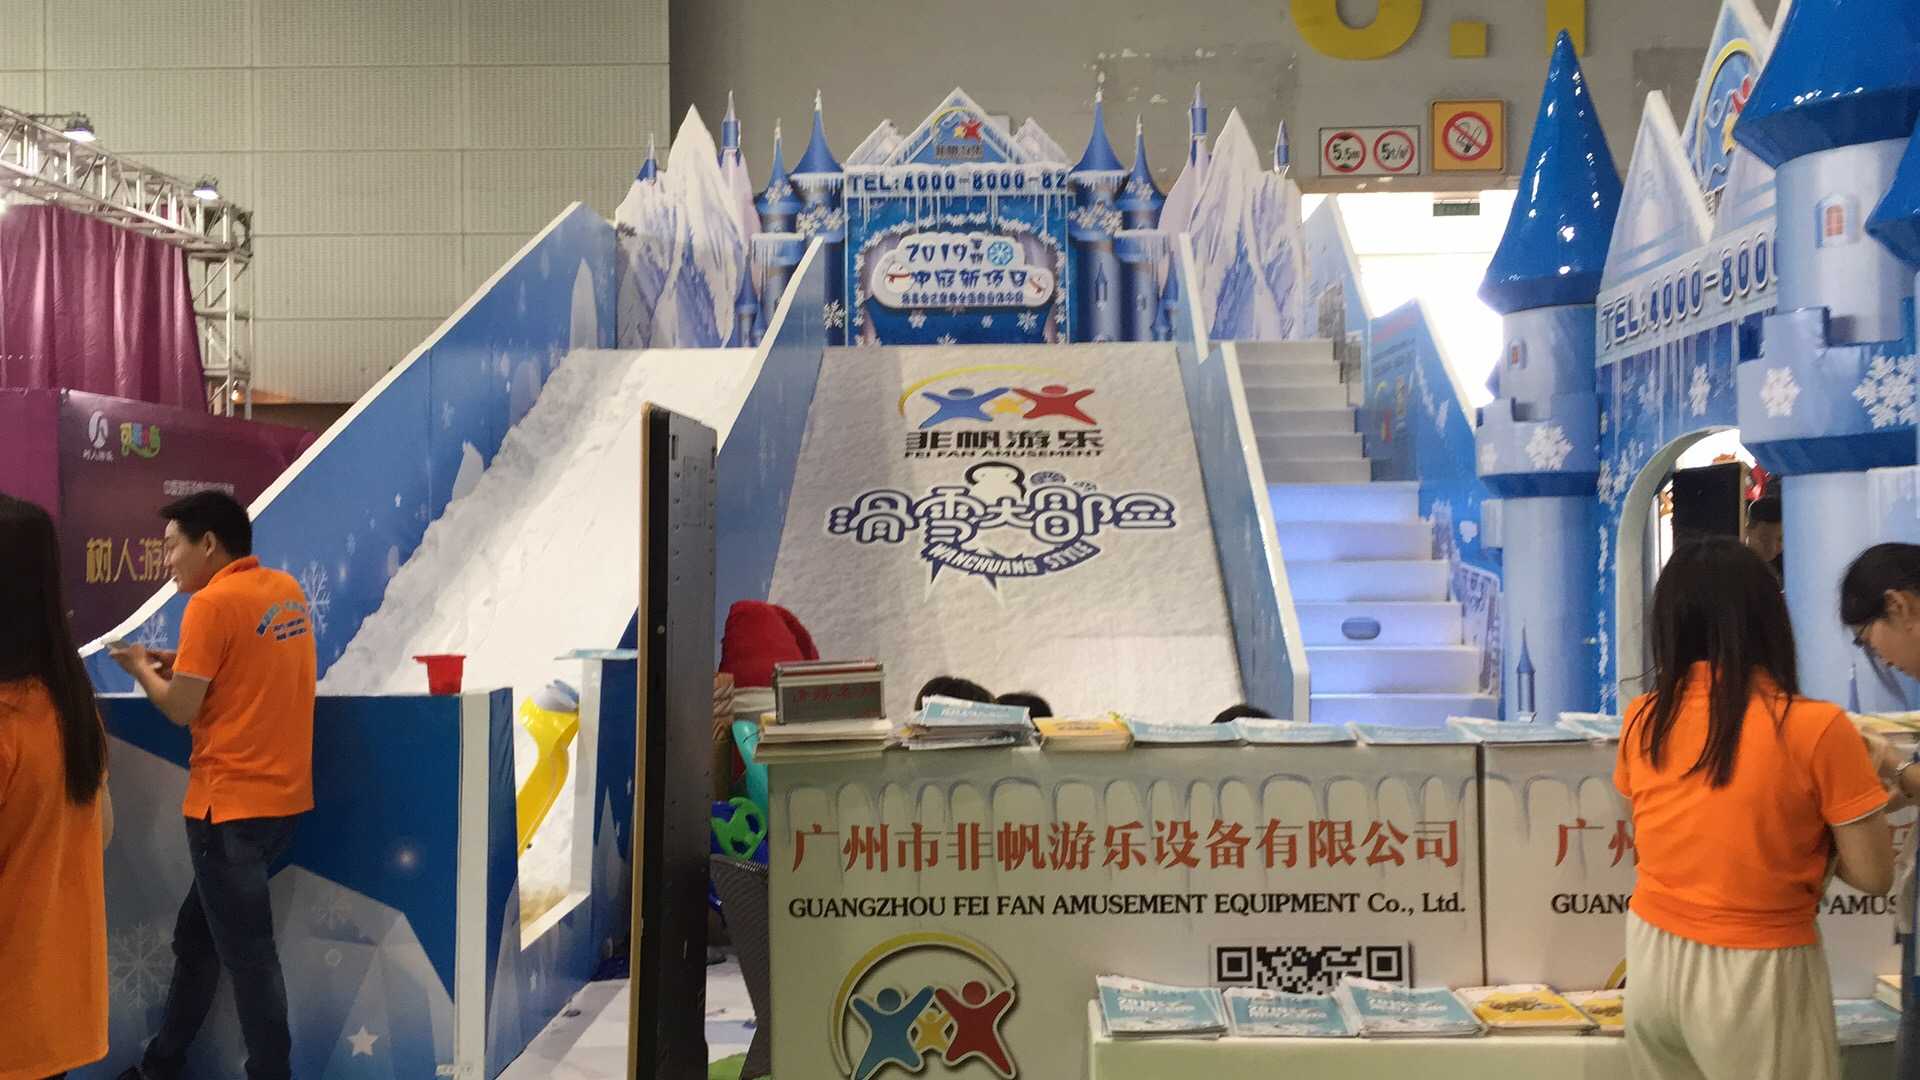 贵州商场火爆项目冰雪仿真雪暑期档滑雪大滑梯百万球场升级版室内乐园